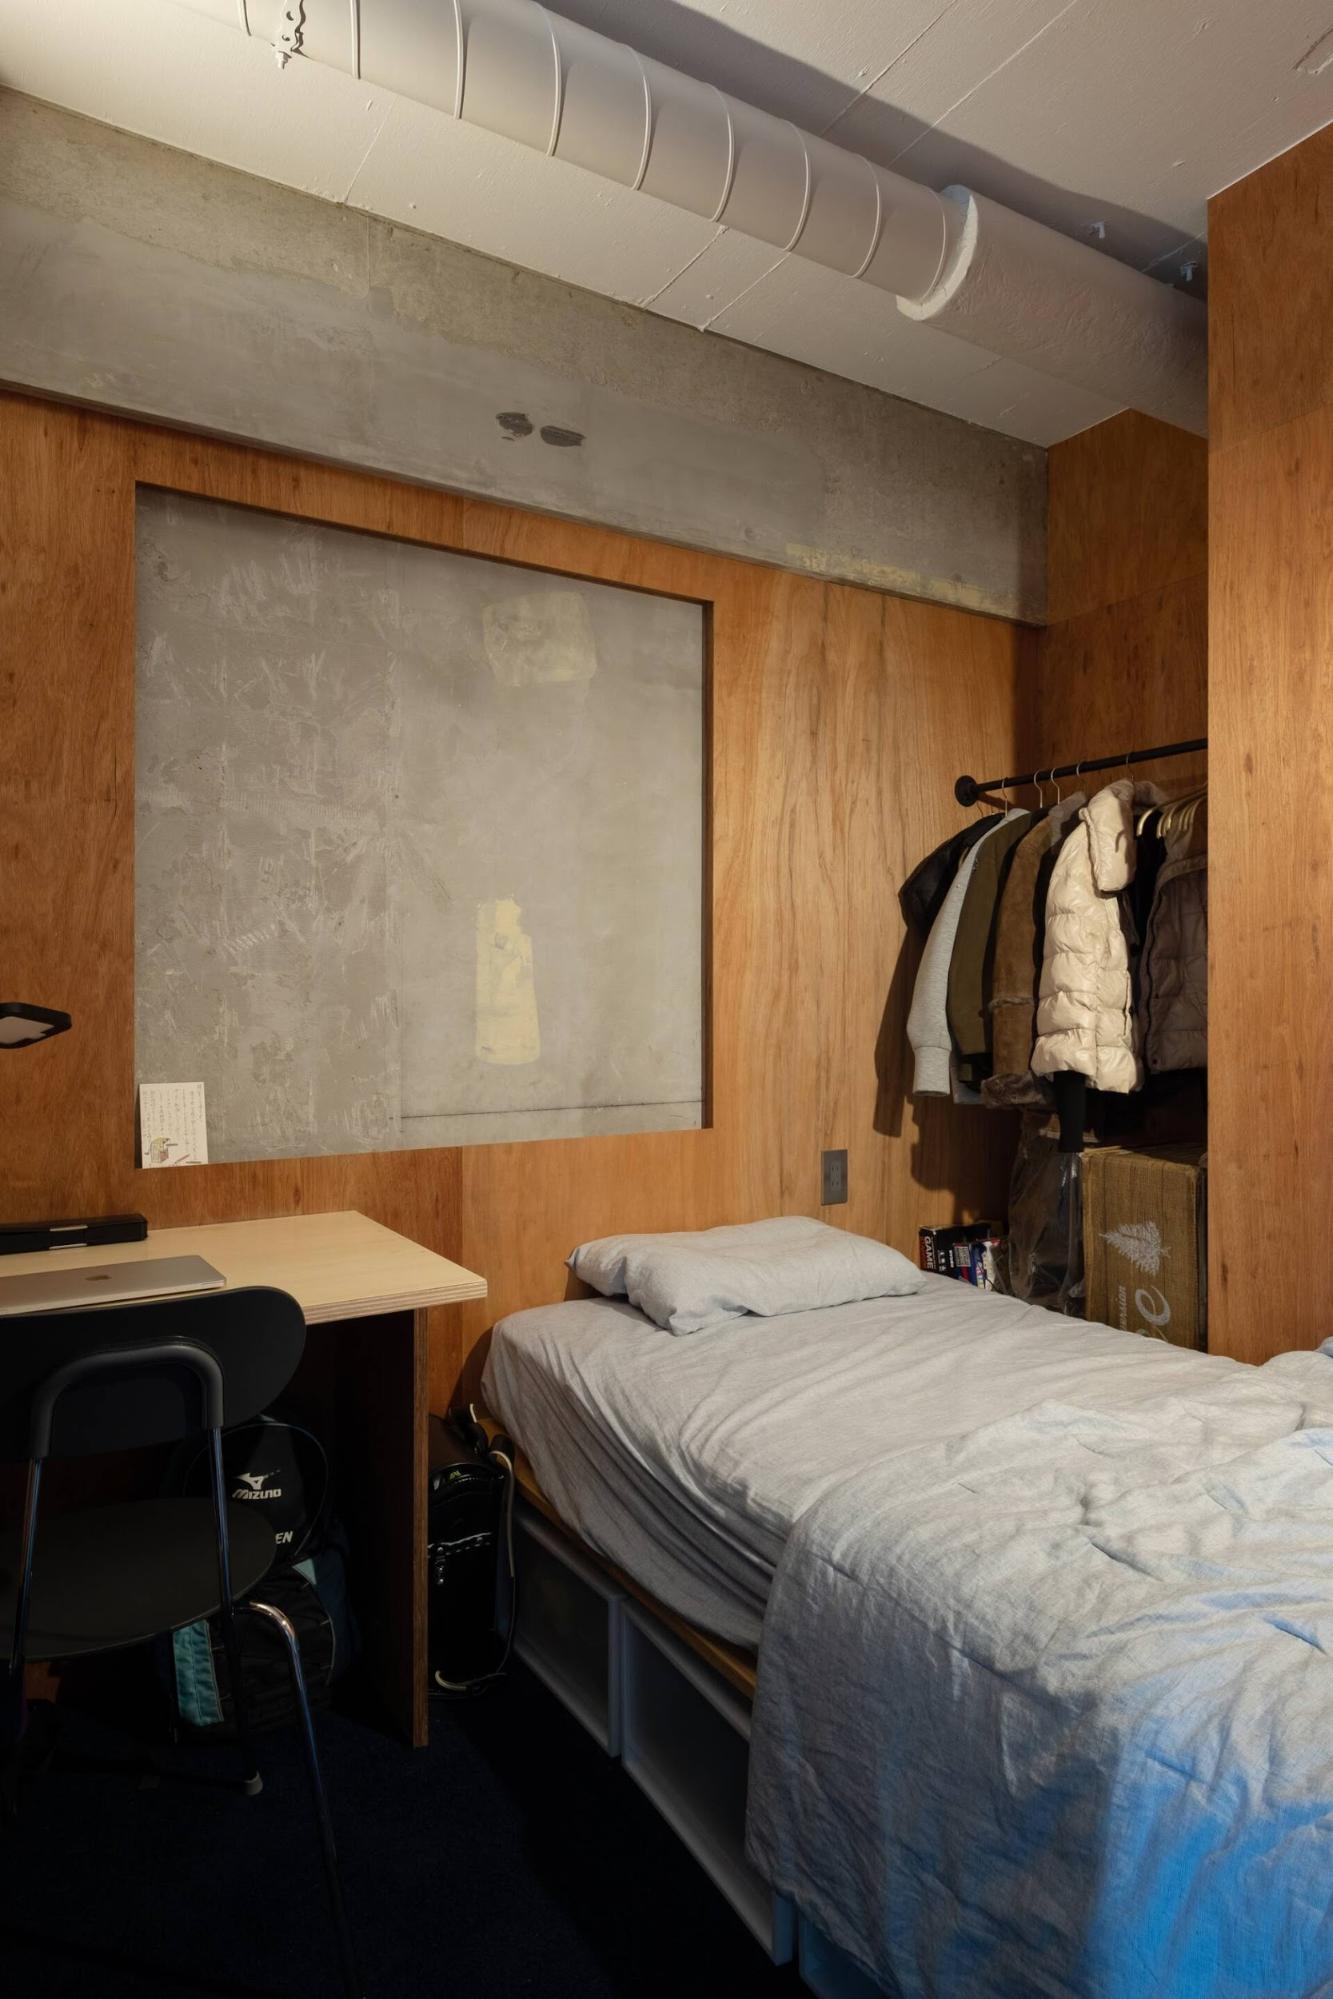 Căn phòng khá nhỏ nên các kệ đựng đồ được tích hợp đặt bên dưới giường ngủ để tiết kiệm không gian